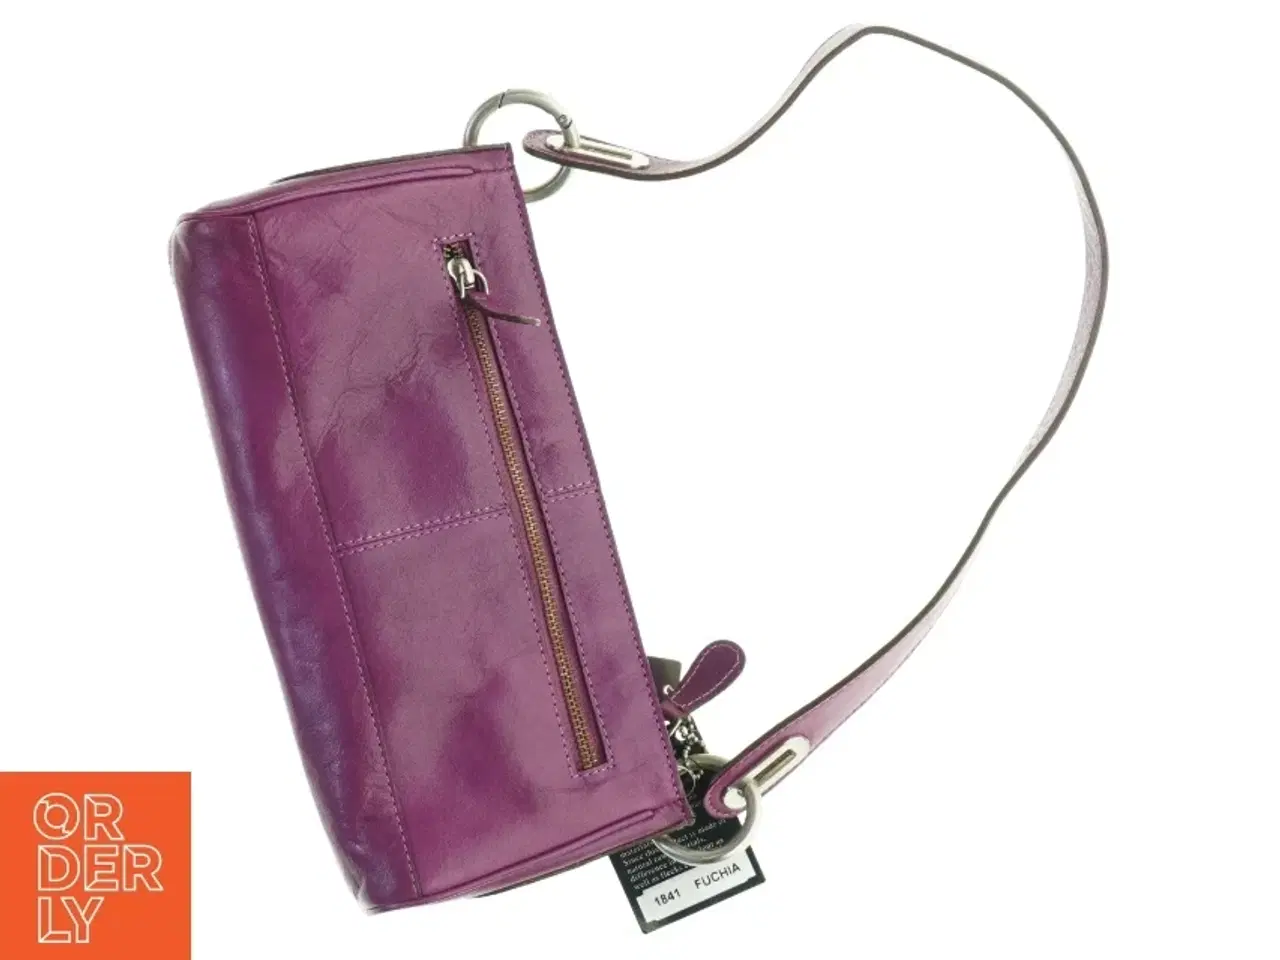 Billede 3 - Læder håndtaske fra Bel Sac (str. 28 x 13 cm)